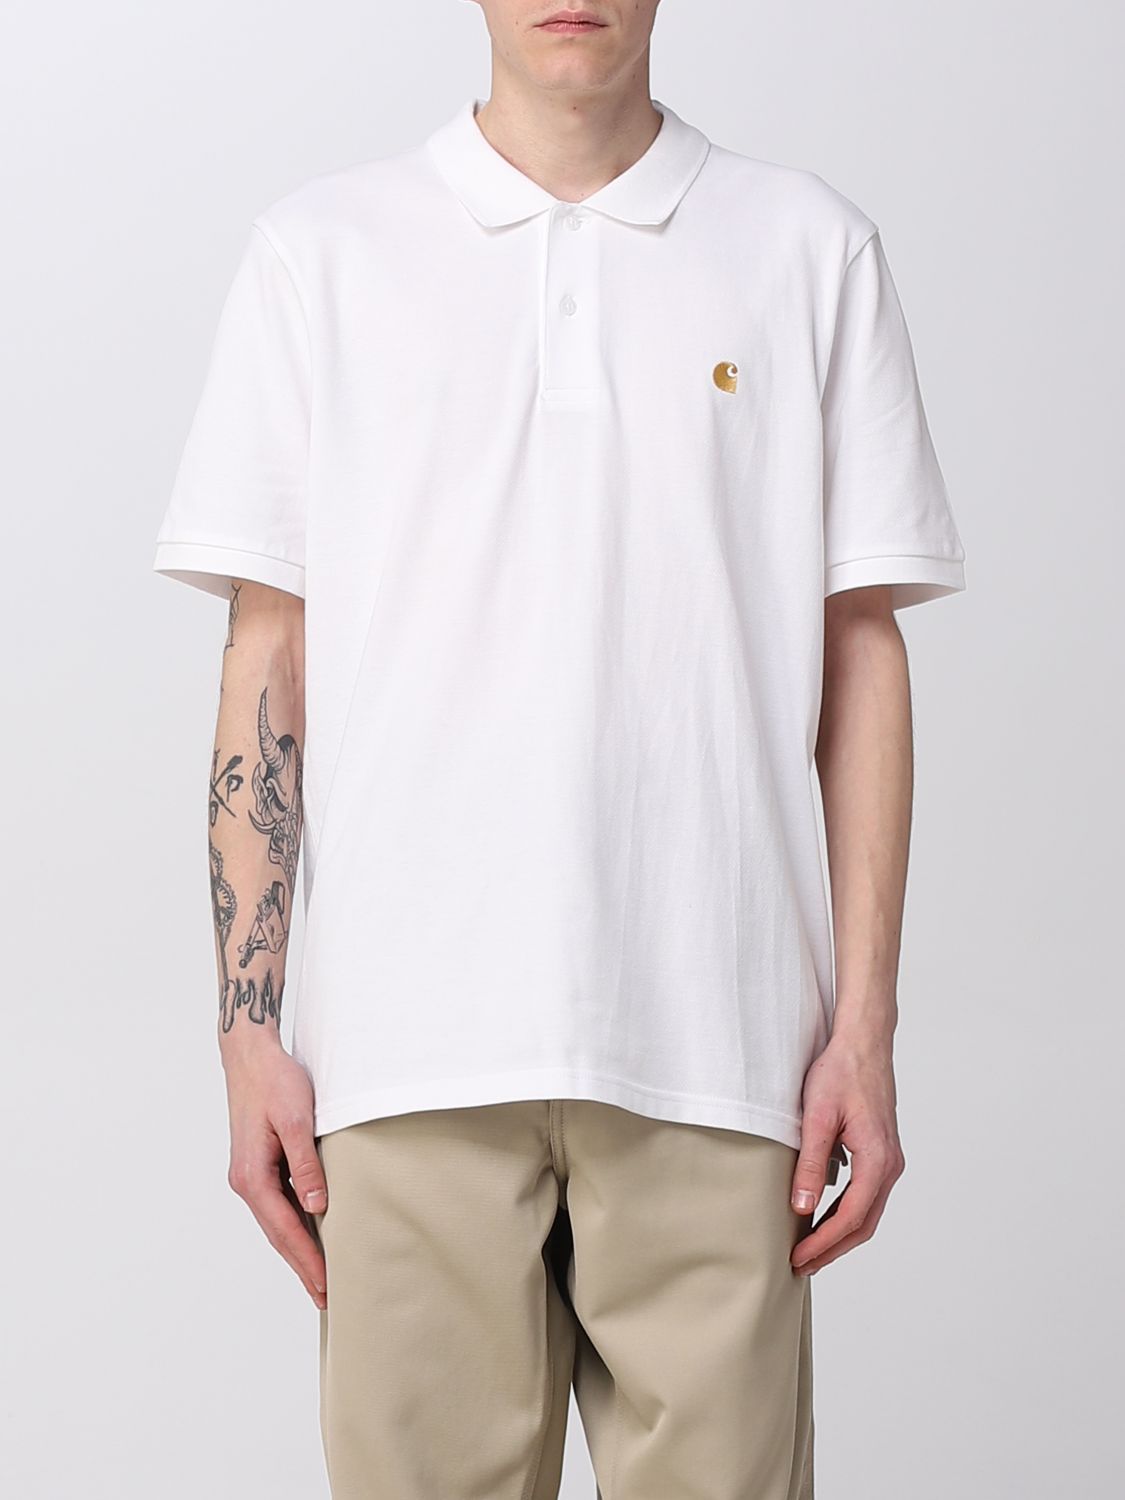 CARHARTT WIP: polo shirt for man - White | Carhartt Wip polo shirt ...